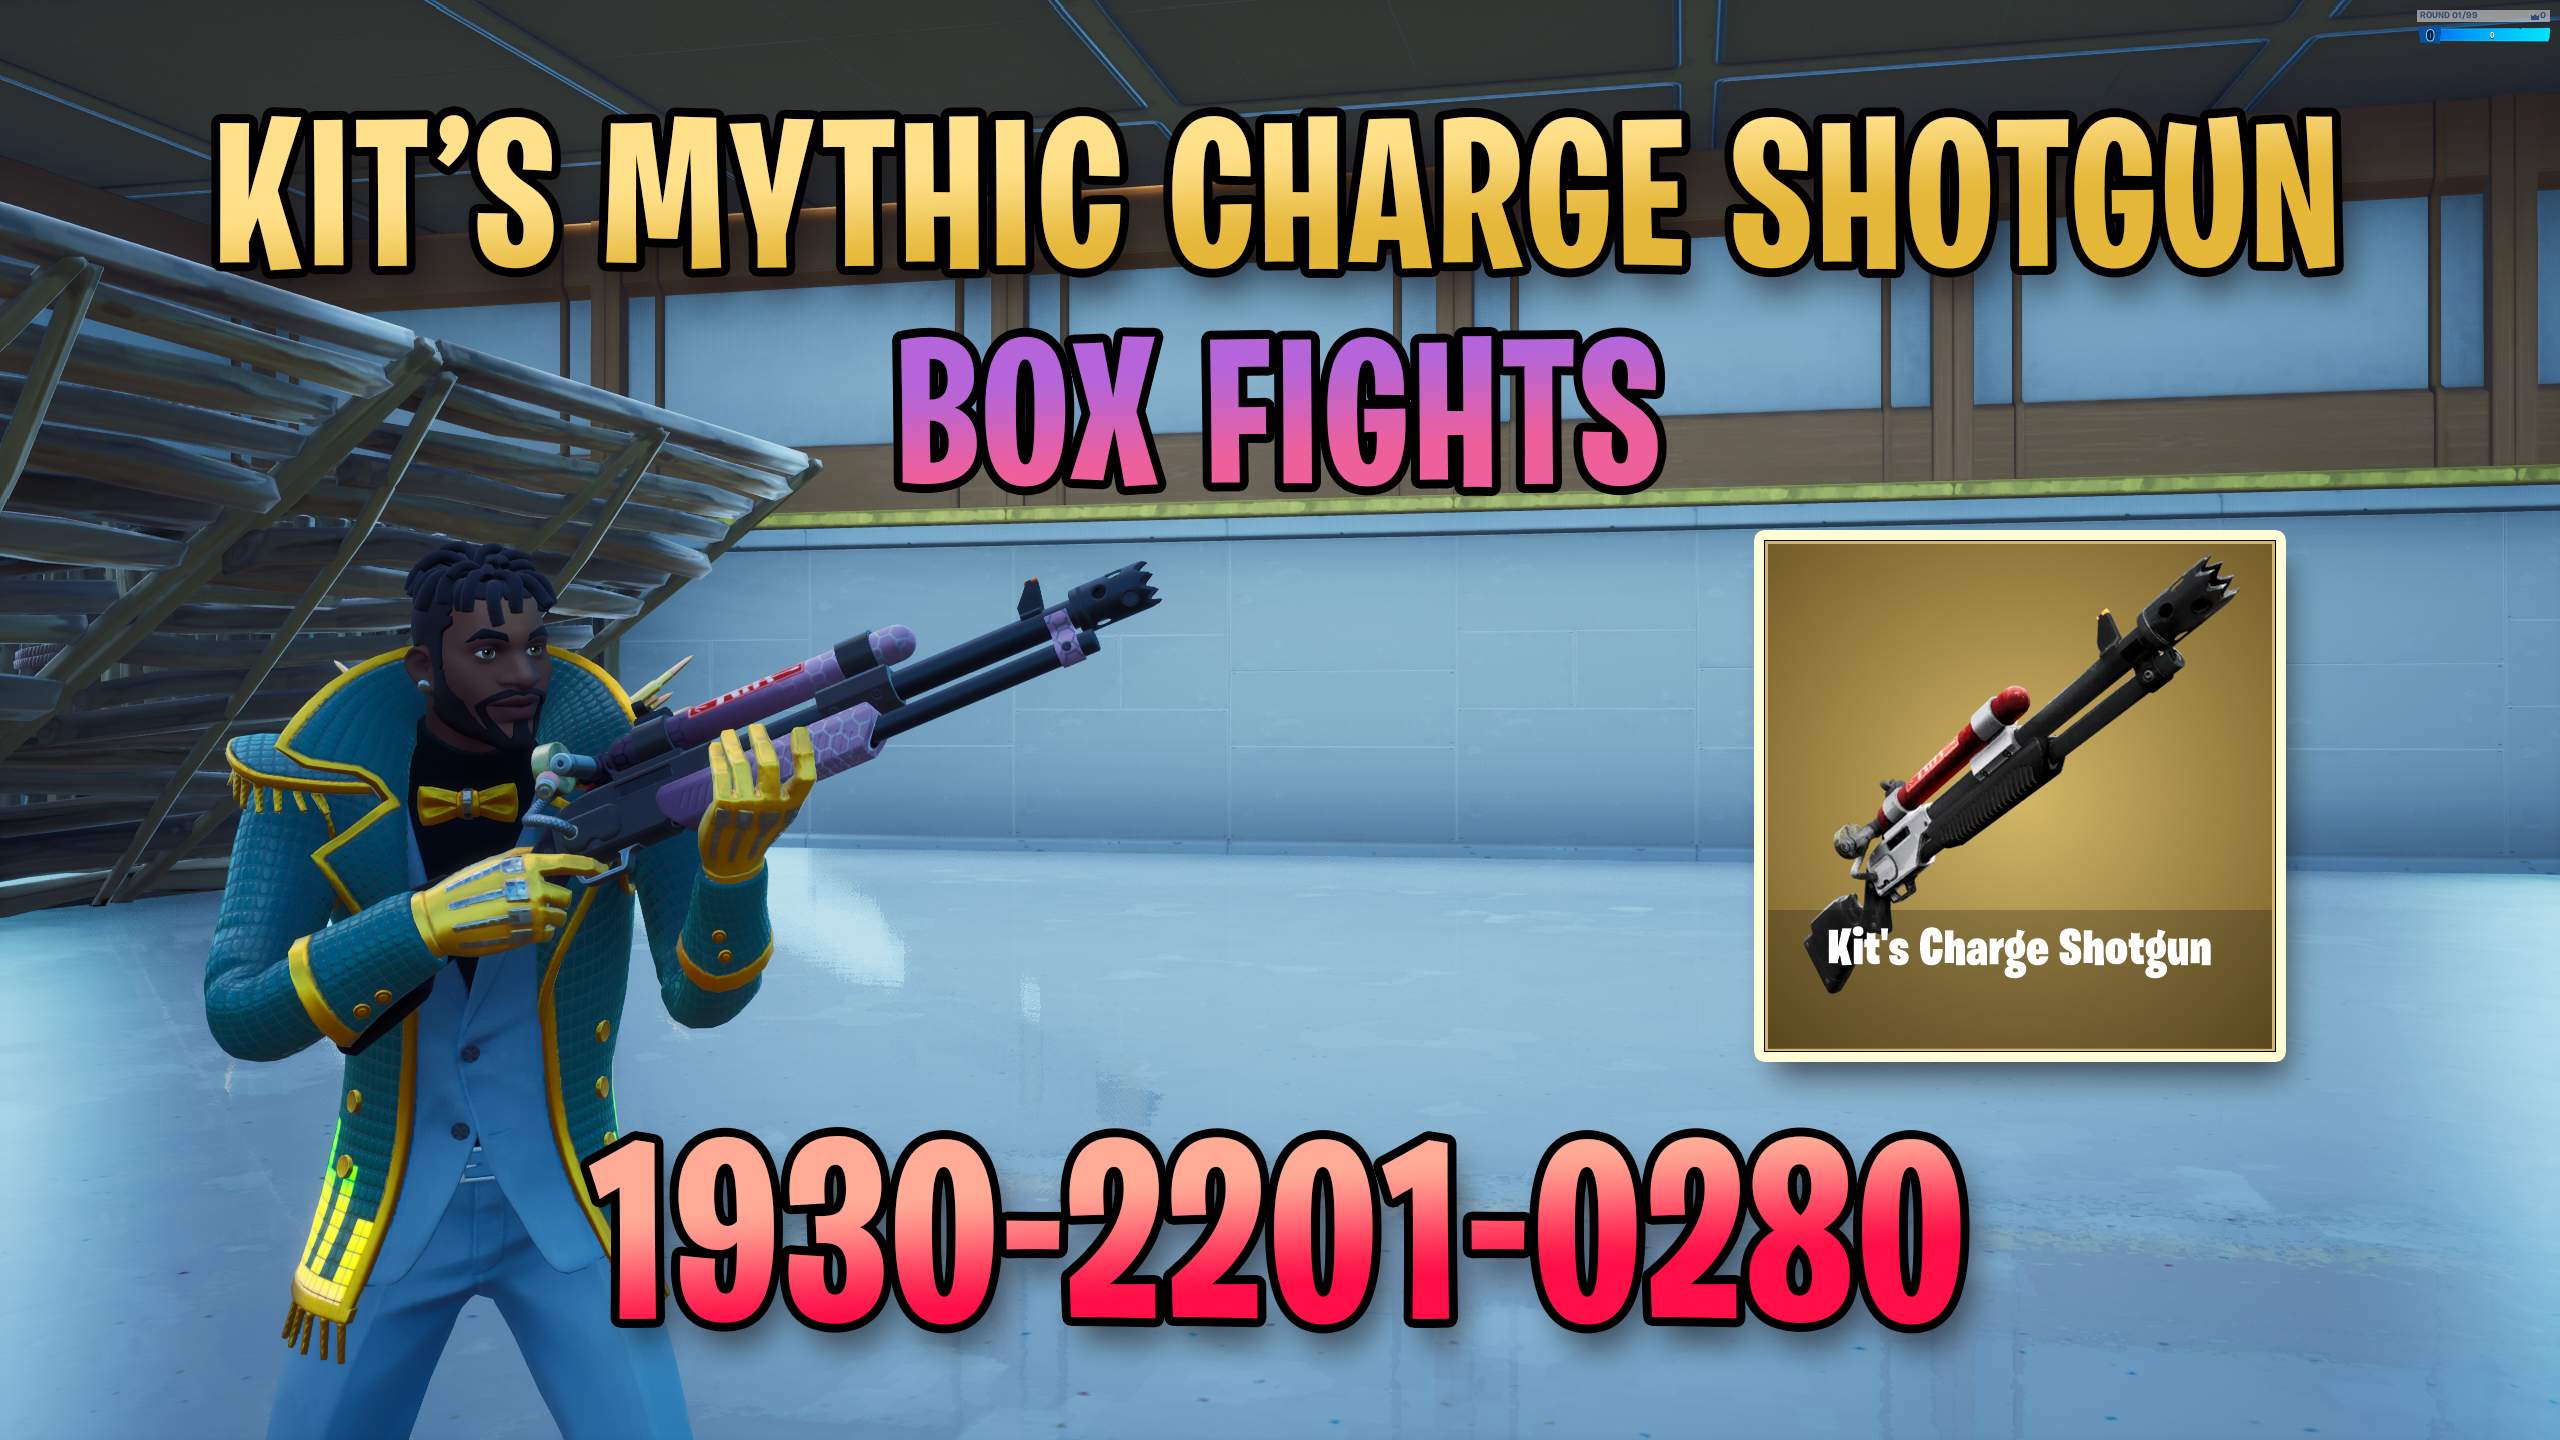 KIT'S MYTHIC CHARGE BOXFIGHT